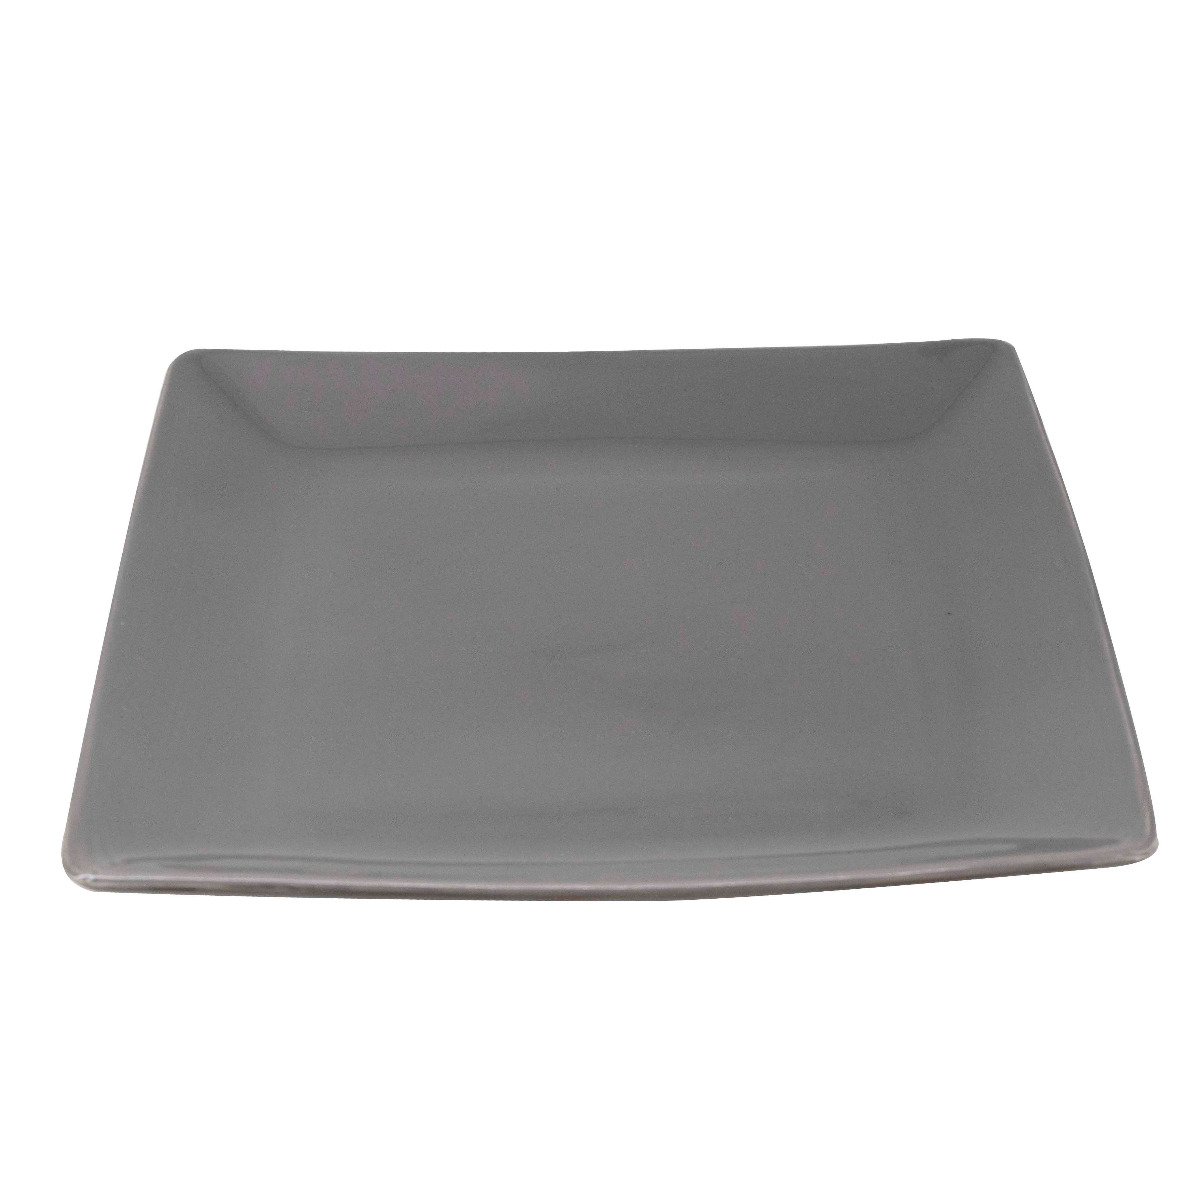 Ceramic serving plate 25cm